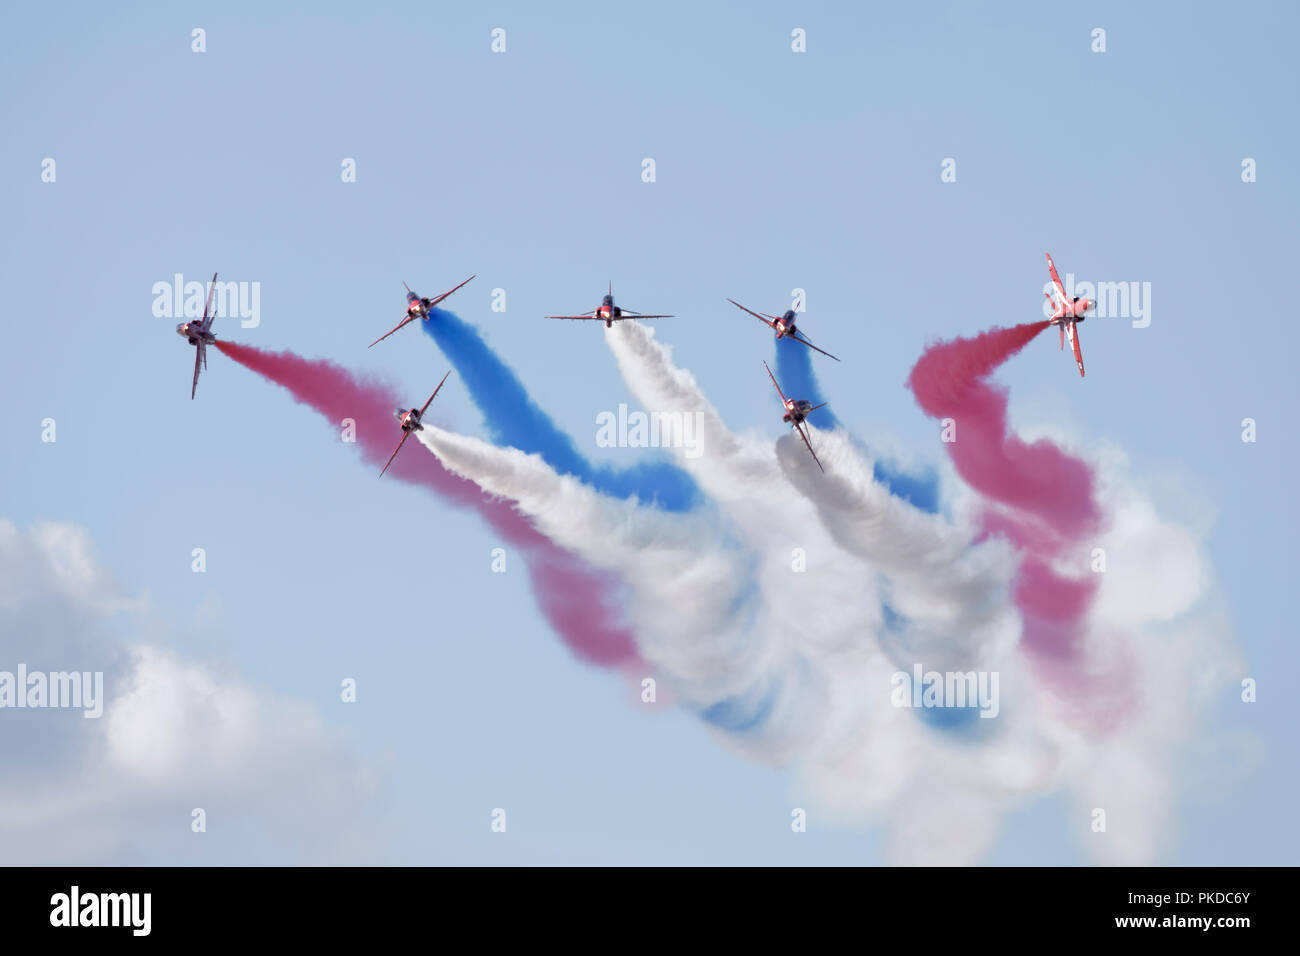 La Royal Air Force britannique des flèches rouges Aerobatic Display Team effectuer leur pause Vixen la manœuvre de la riat Air Show Banque D'Images